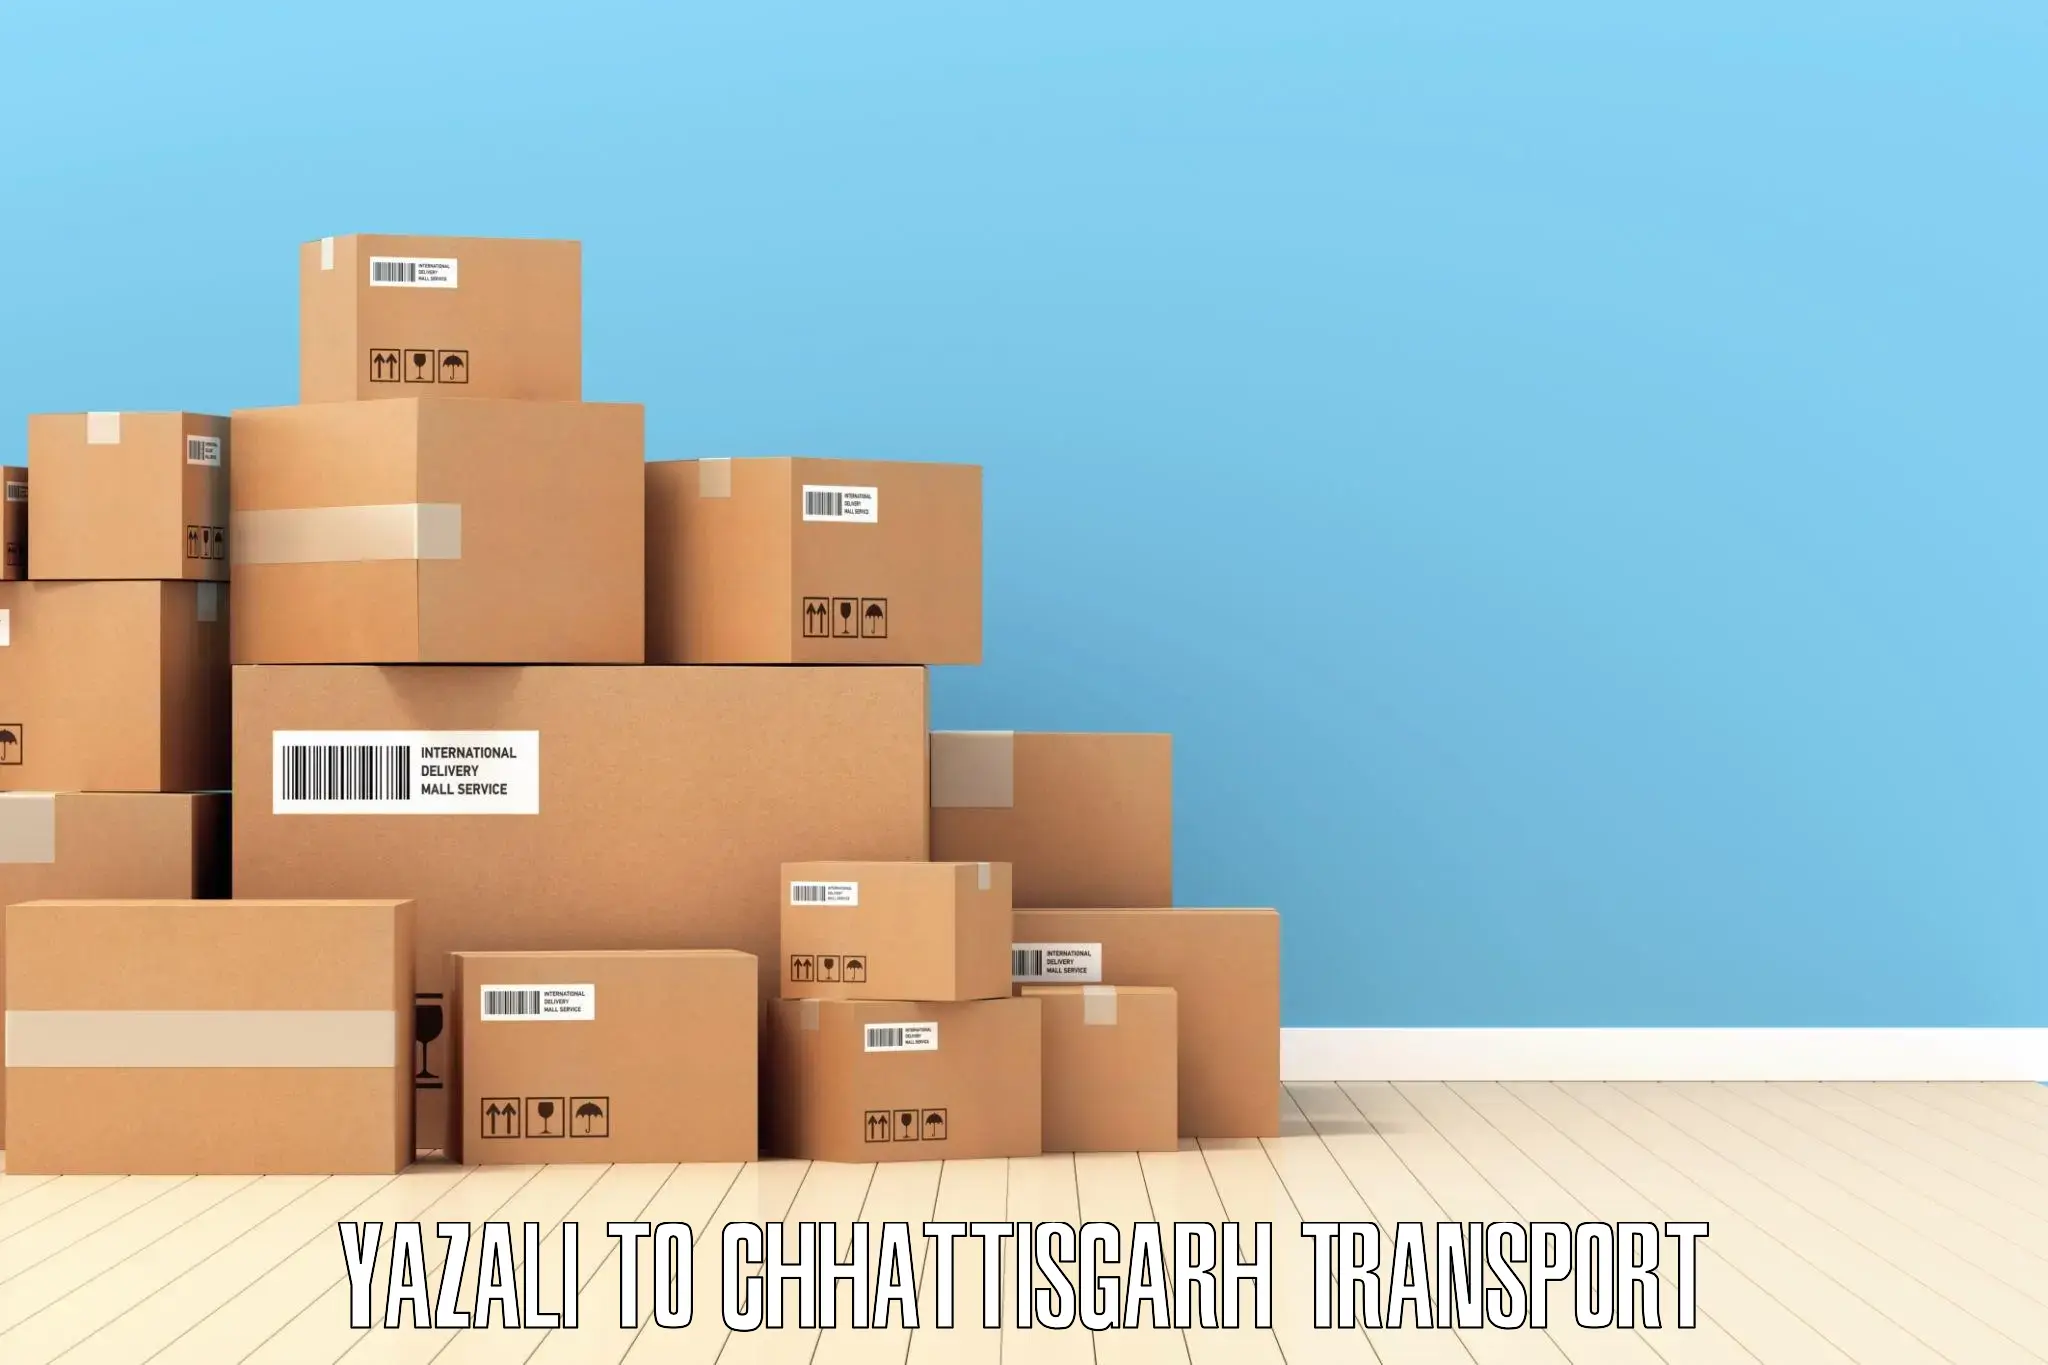 Commercial transport service Yazali to Chhattisgarh